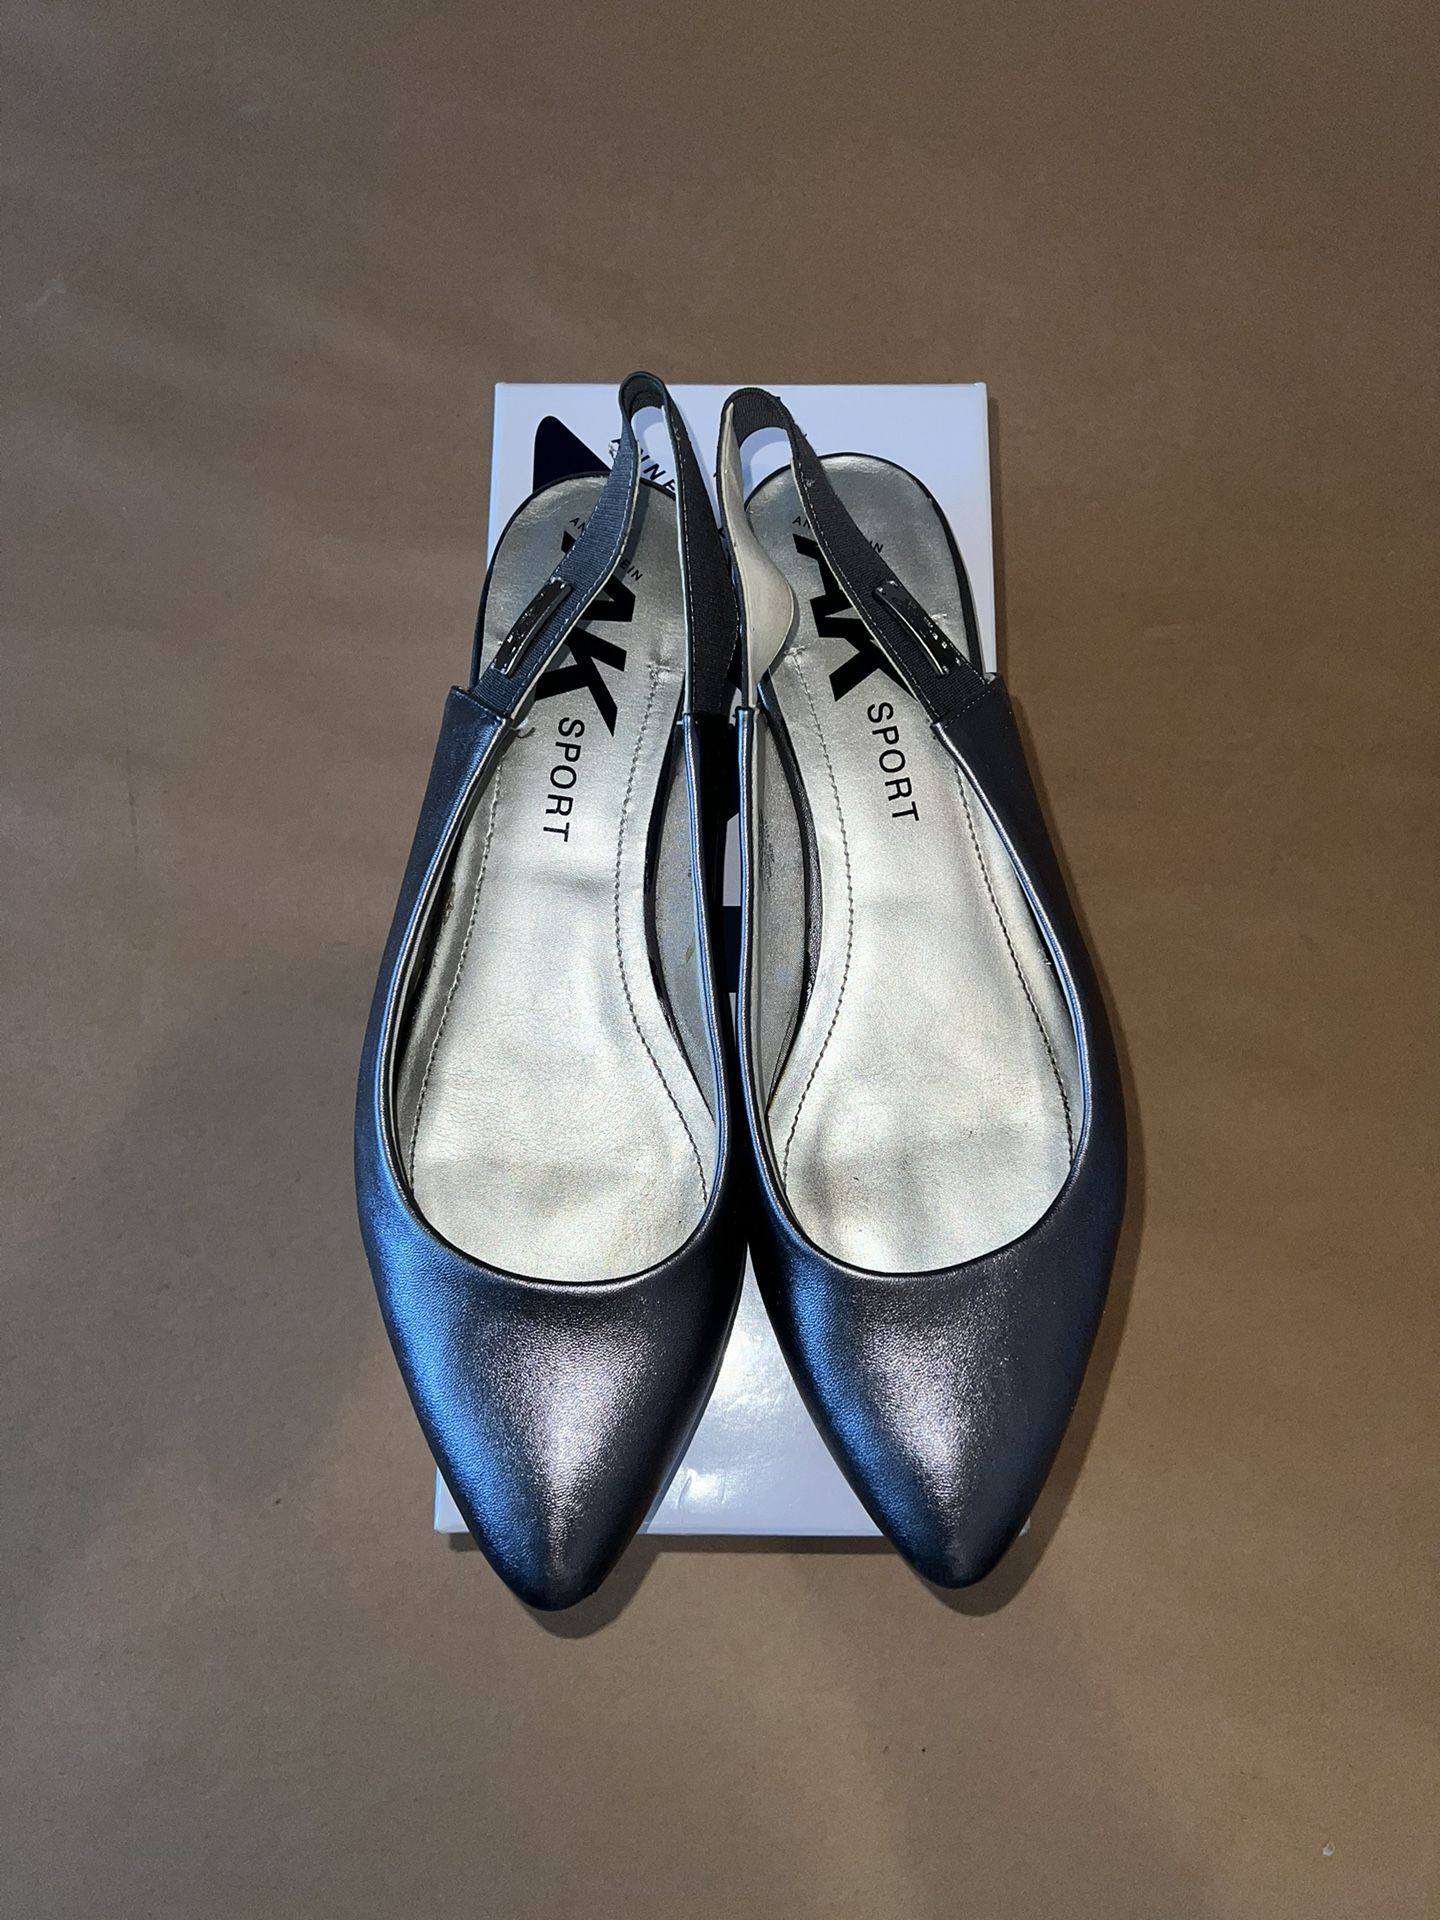 Ann Klein Woman’s Shoes Size 9